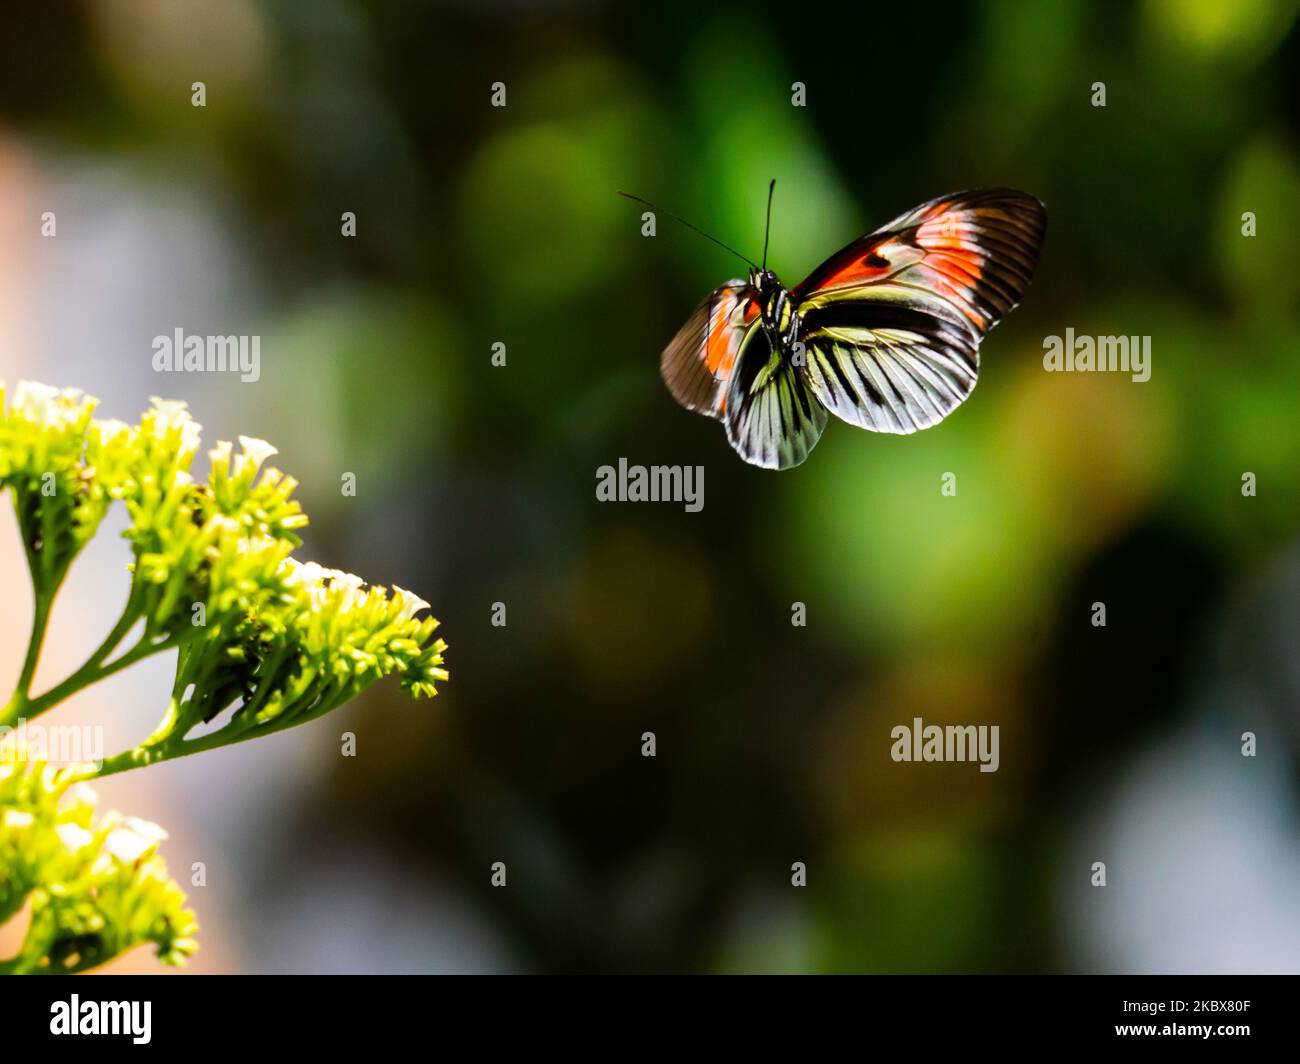 Una mariposa cartero (Heliconius melpomene) volando hacia una flor sobre un fondo natural borroso Foto de stock